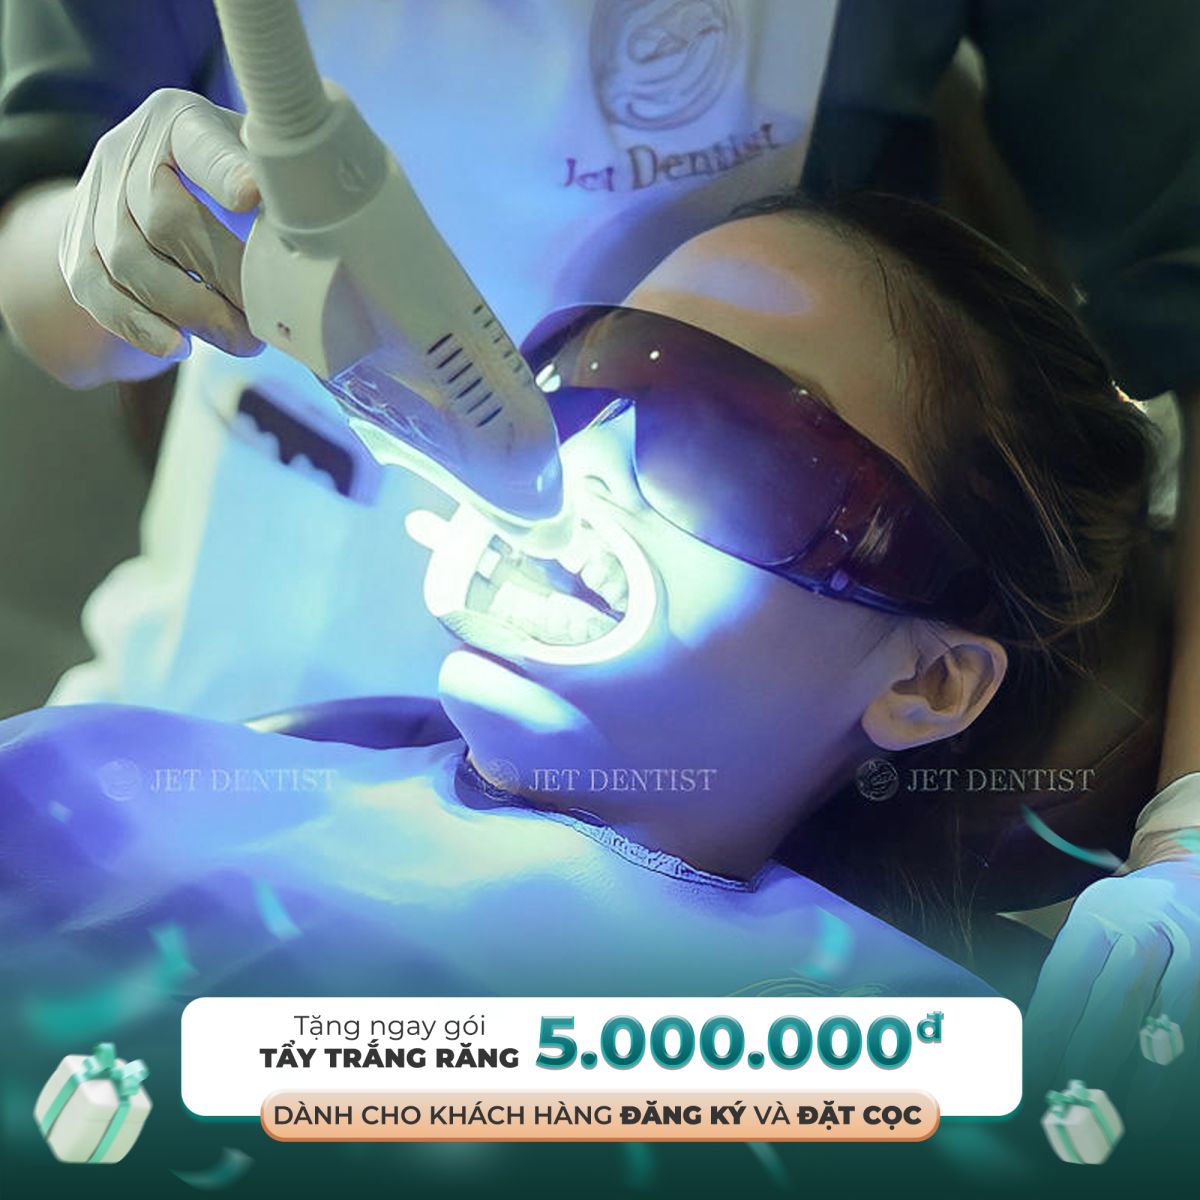 Tặng gói tẩy trắng răng trị giá 5.000.000đ cho khách hàng đăng ký hoặc đặt cọc dịch vụ chỉnh nha 